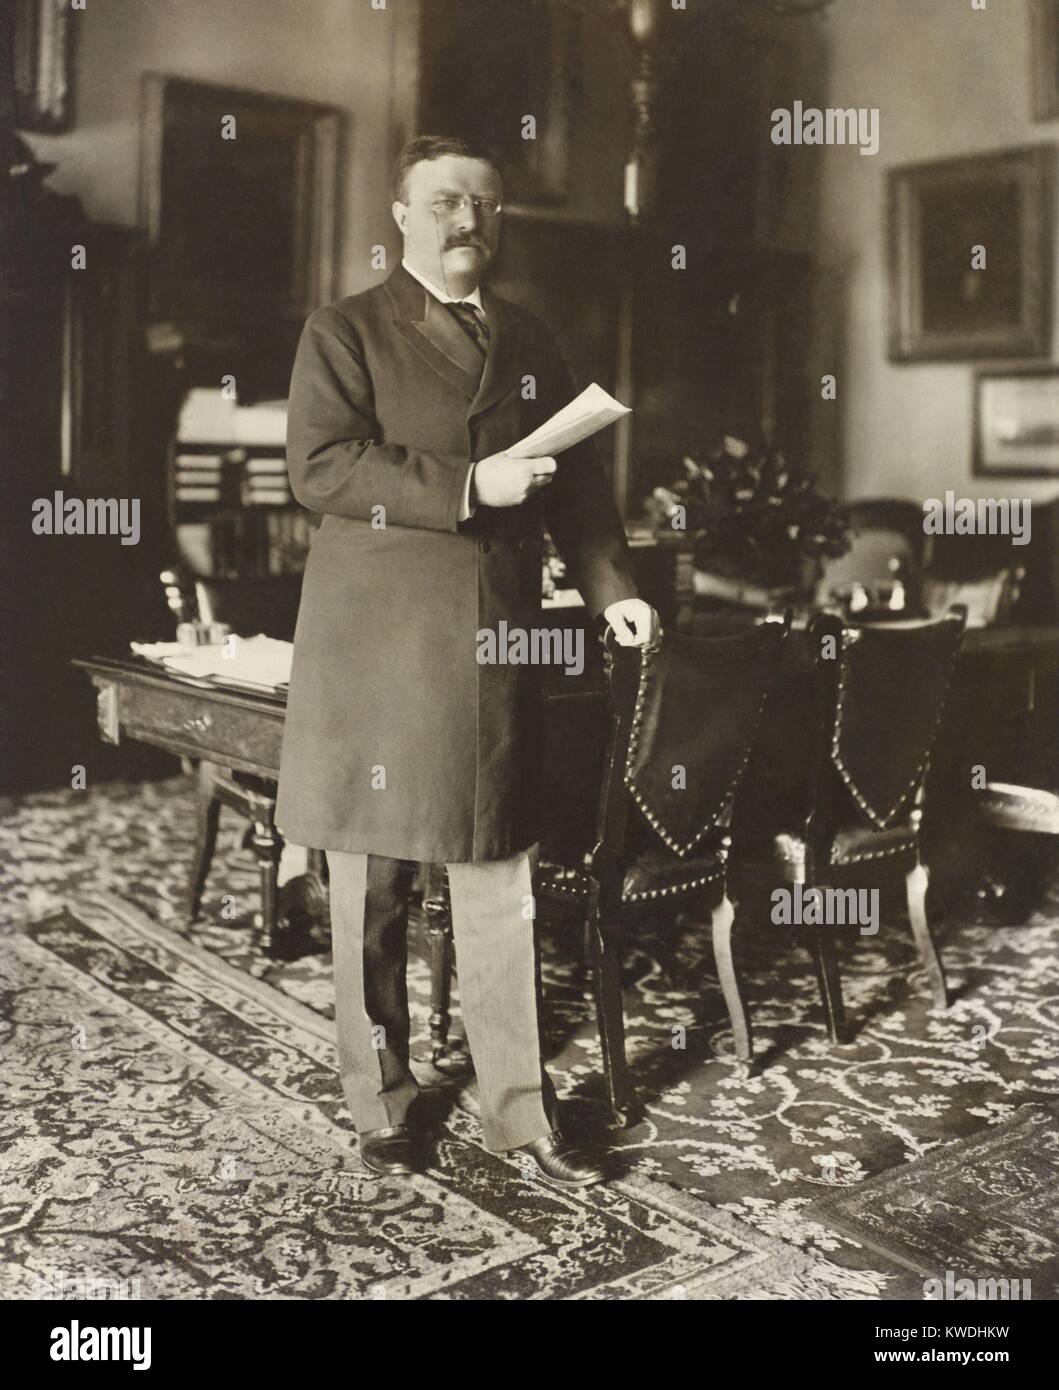 Präsident Theodore Roosevelt, 1907, Tabelle, Papier in der rechten Hand. Durch Washington, D.C., Fotograf, B.M. (Clinedinst BSLOC 2017 6 54) Stockfoto